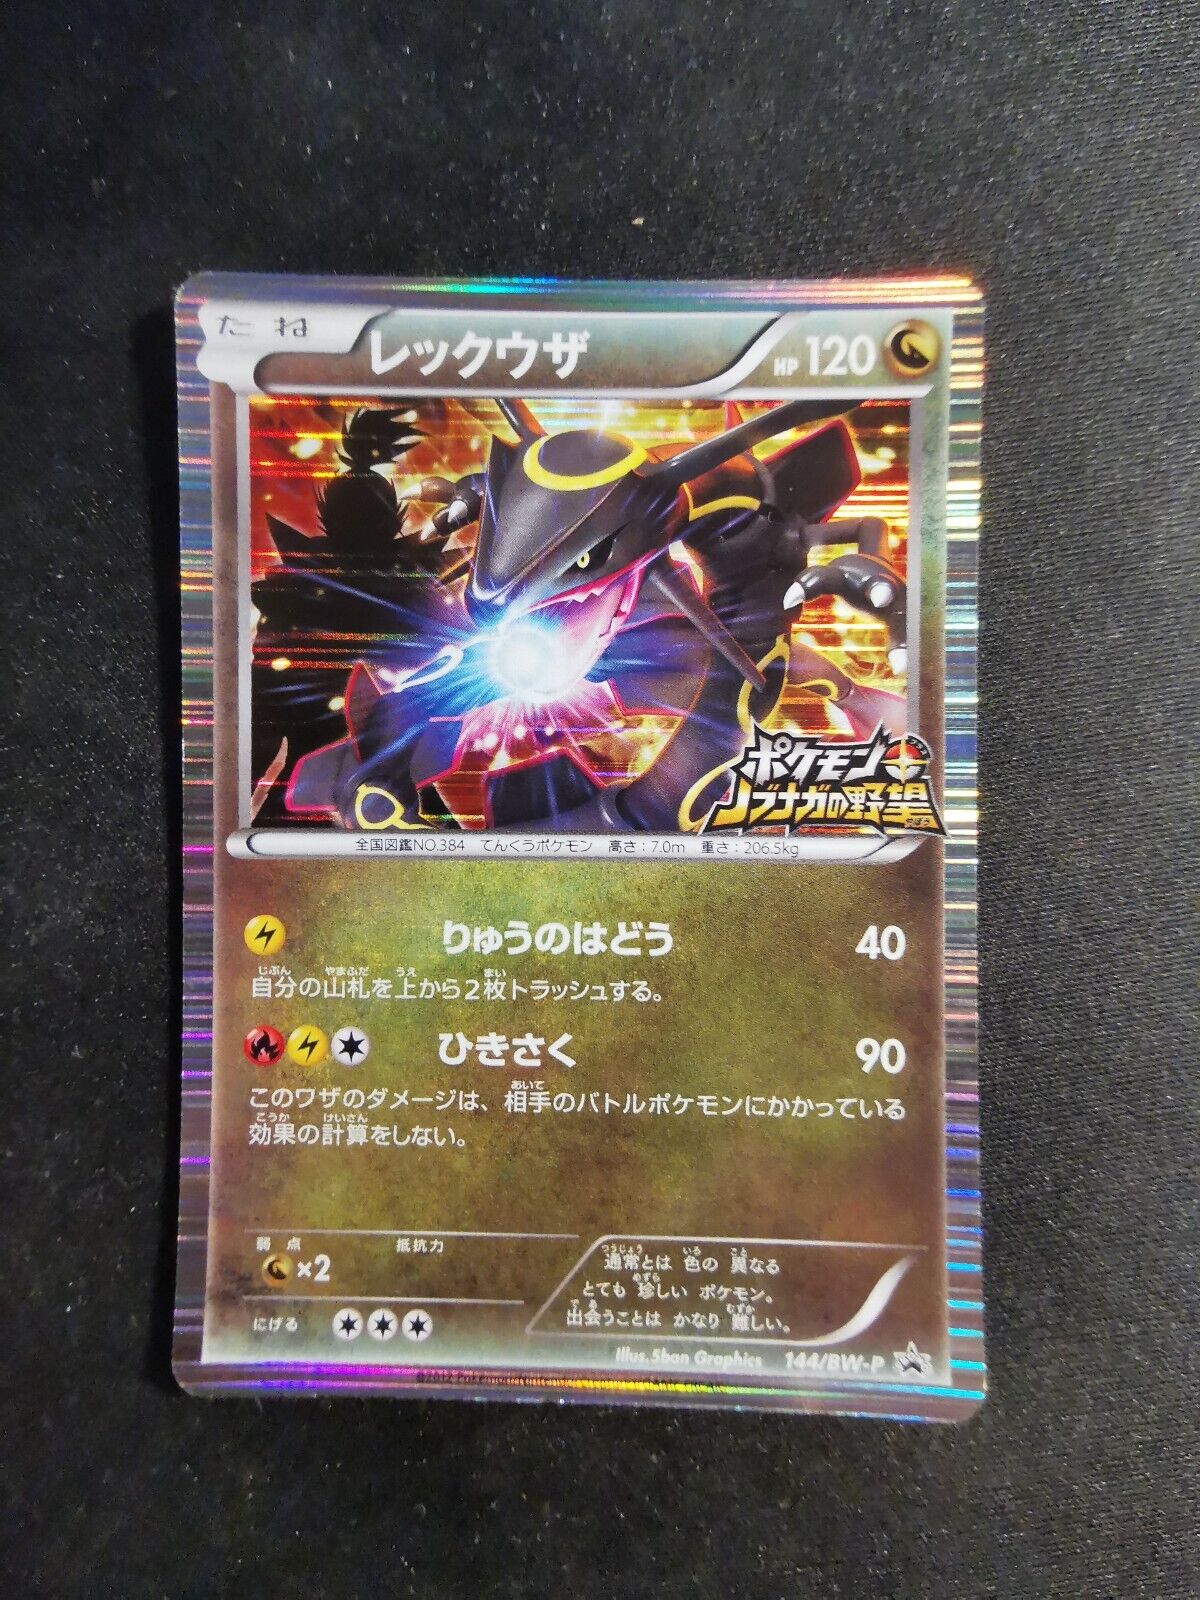 Rayquaza 144/BW-P Holo Promo Japanese Pokemon Card